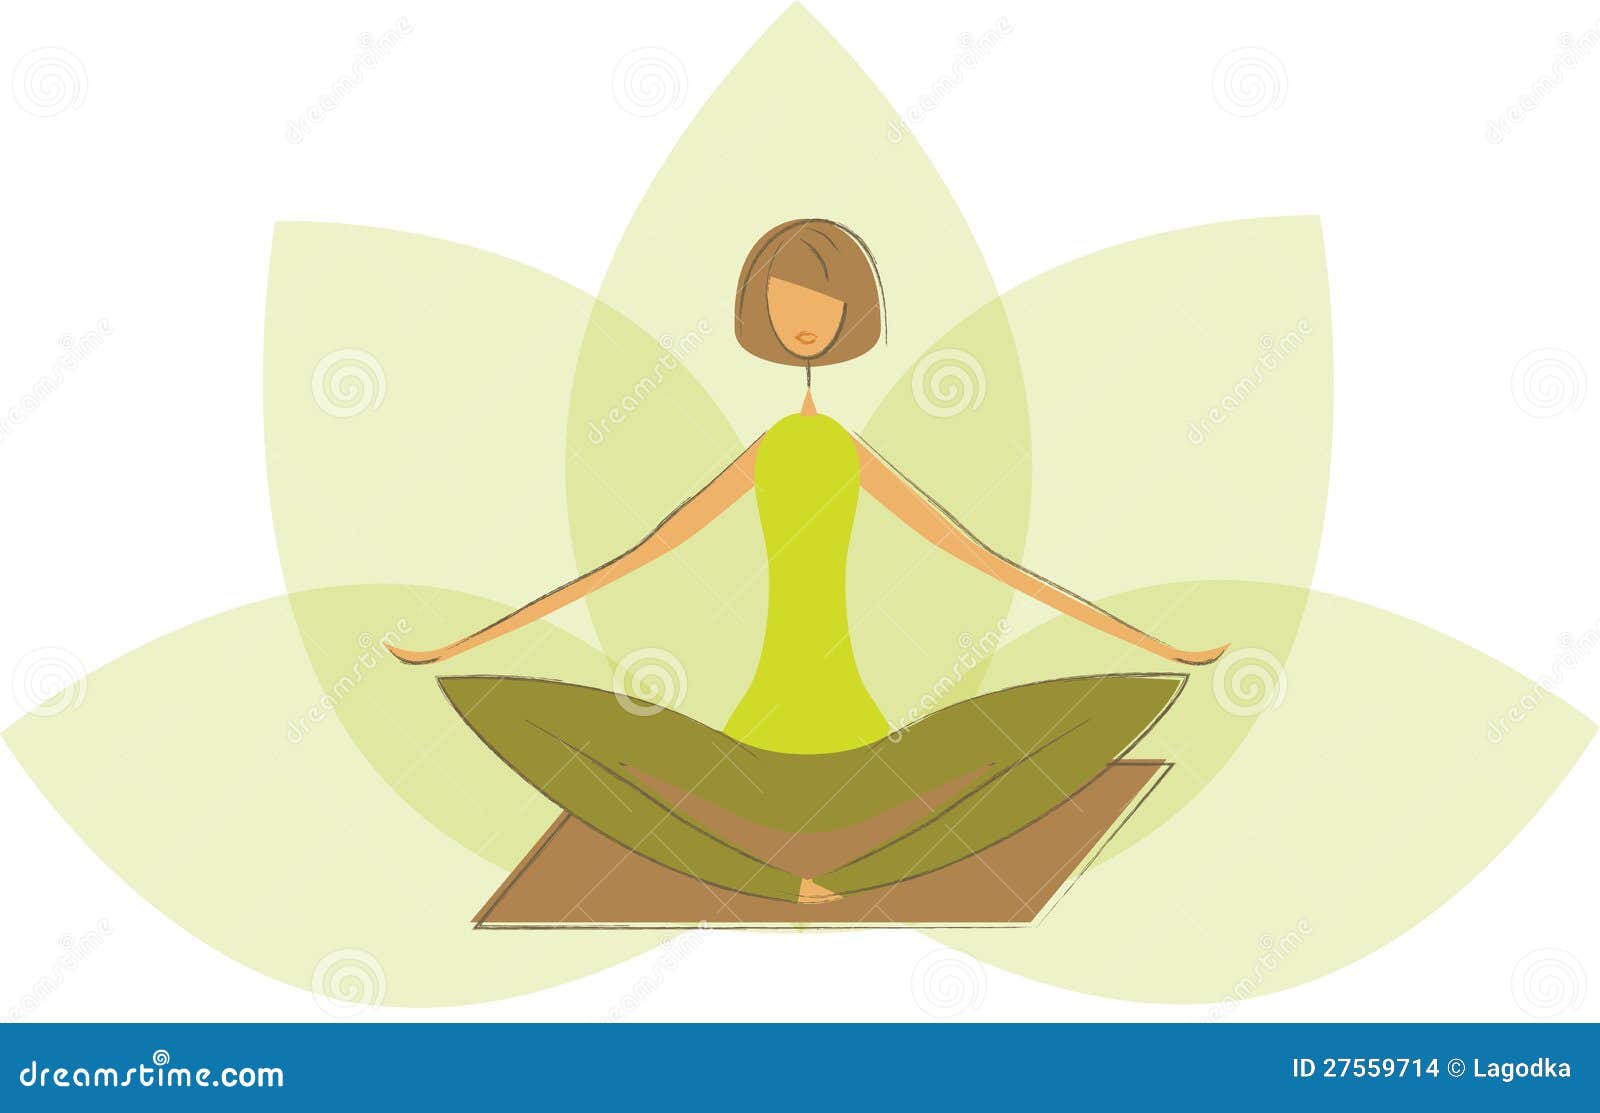 Di Stilizzata Yoga Illustrazioni Vettoriali E Clipart Stock 915 Illustrazioni Stock